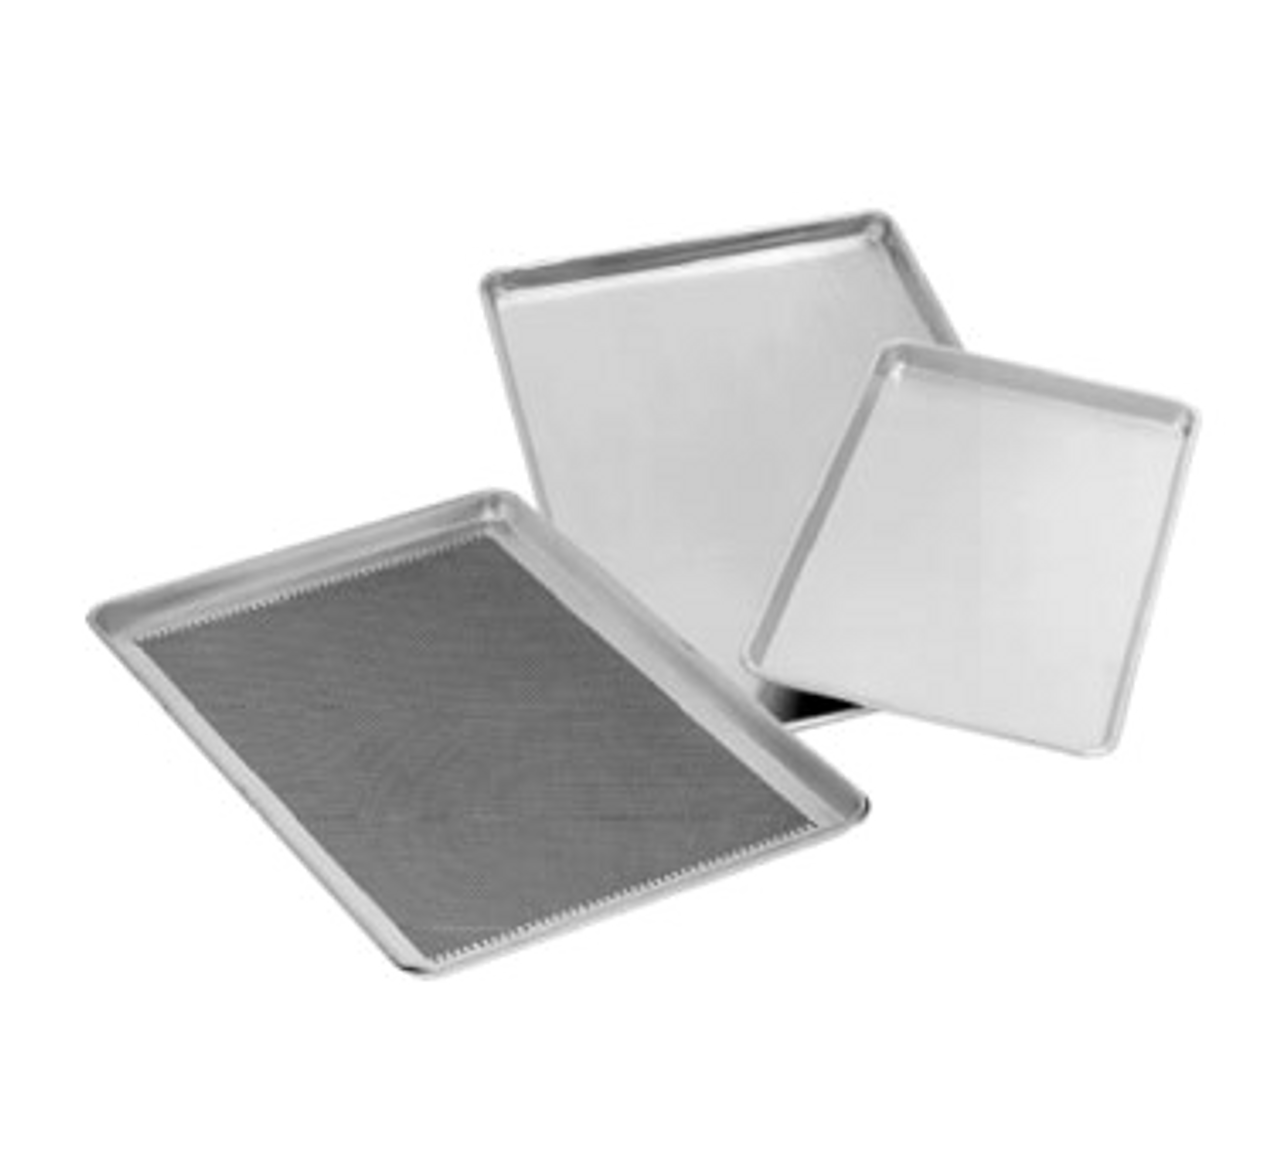 Bun Sheet Pan, 1/2 Size, Perforated, Aluminum, Thunder Group